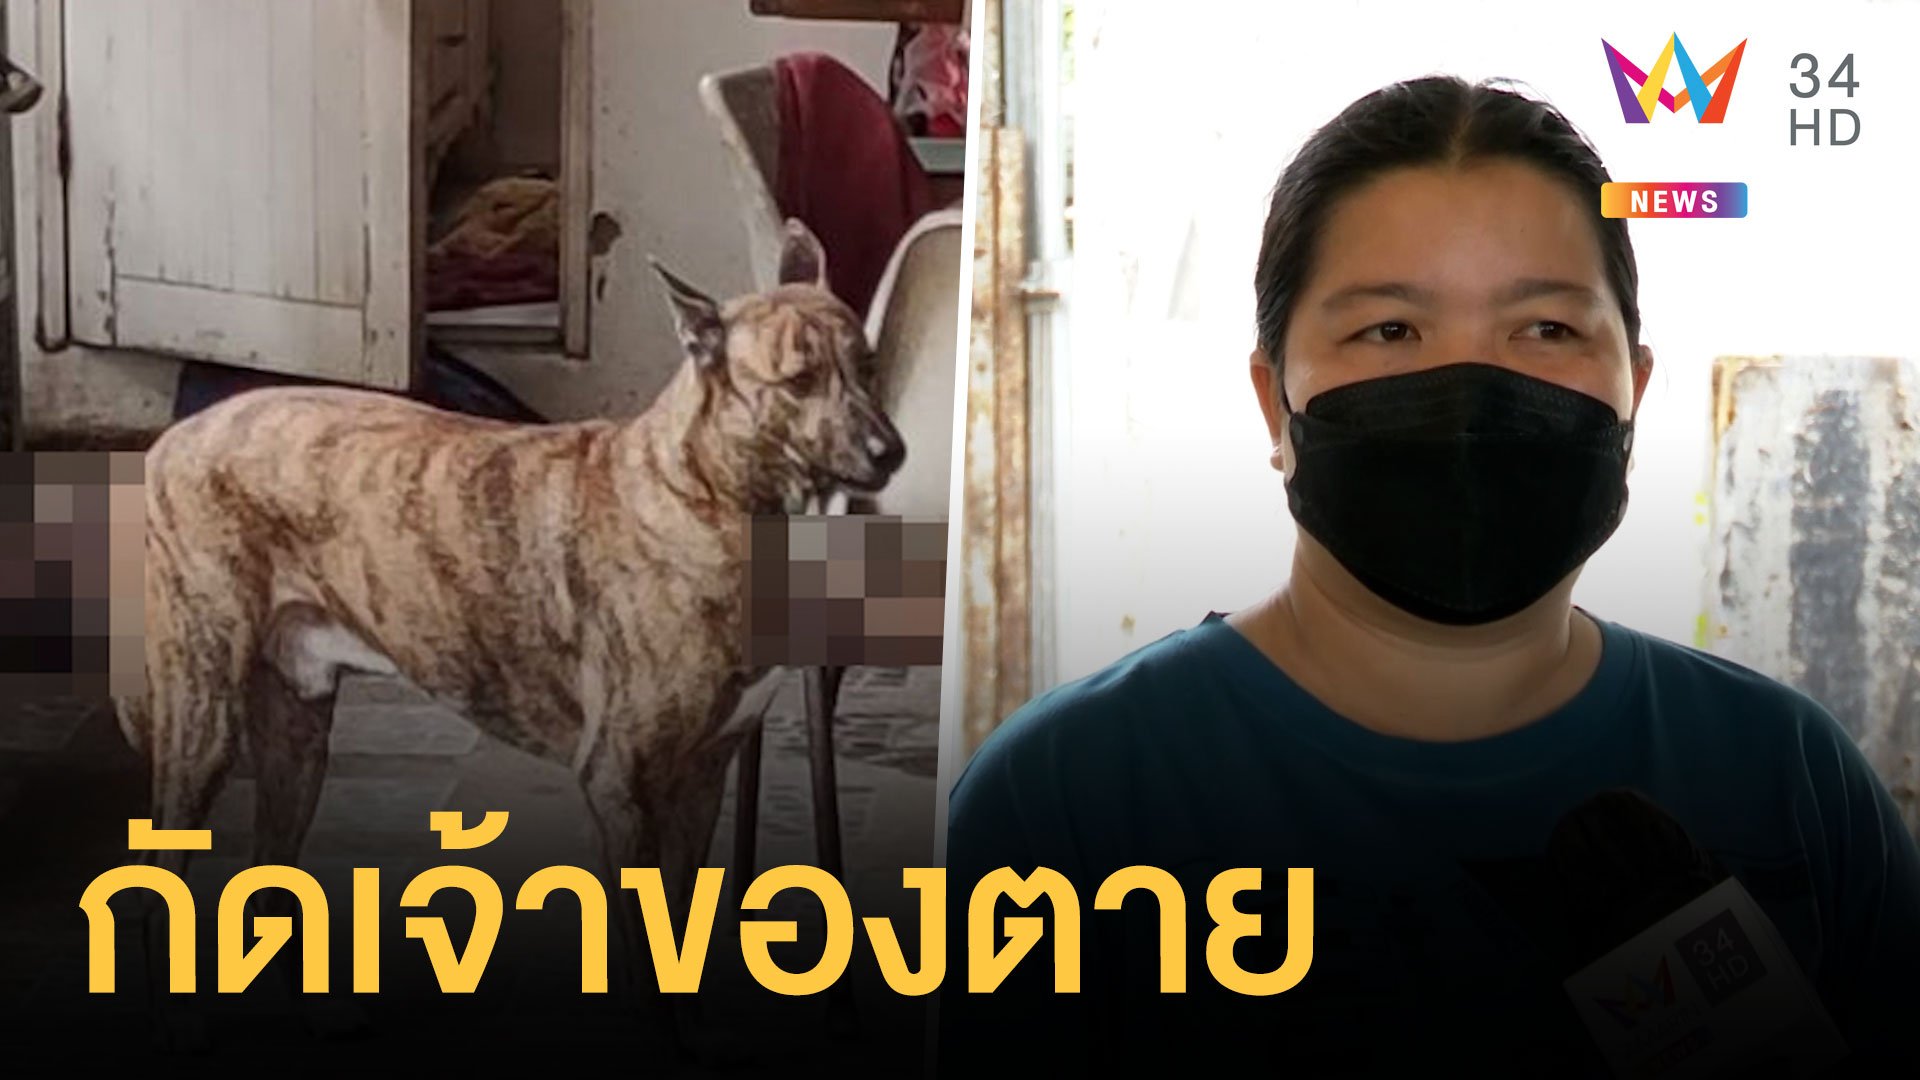 “ไอ้เสือ” หมาโหดขย้ำป้าเจ้าของบ้านดับคาที่  | ข่าวเที่ยงอมรินทร์ | 29 ส.ค. 64 | AMARIN TVHD34